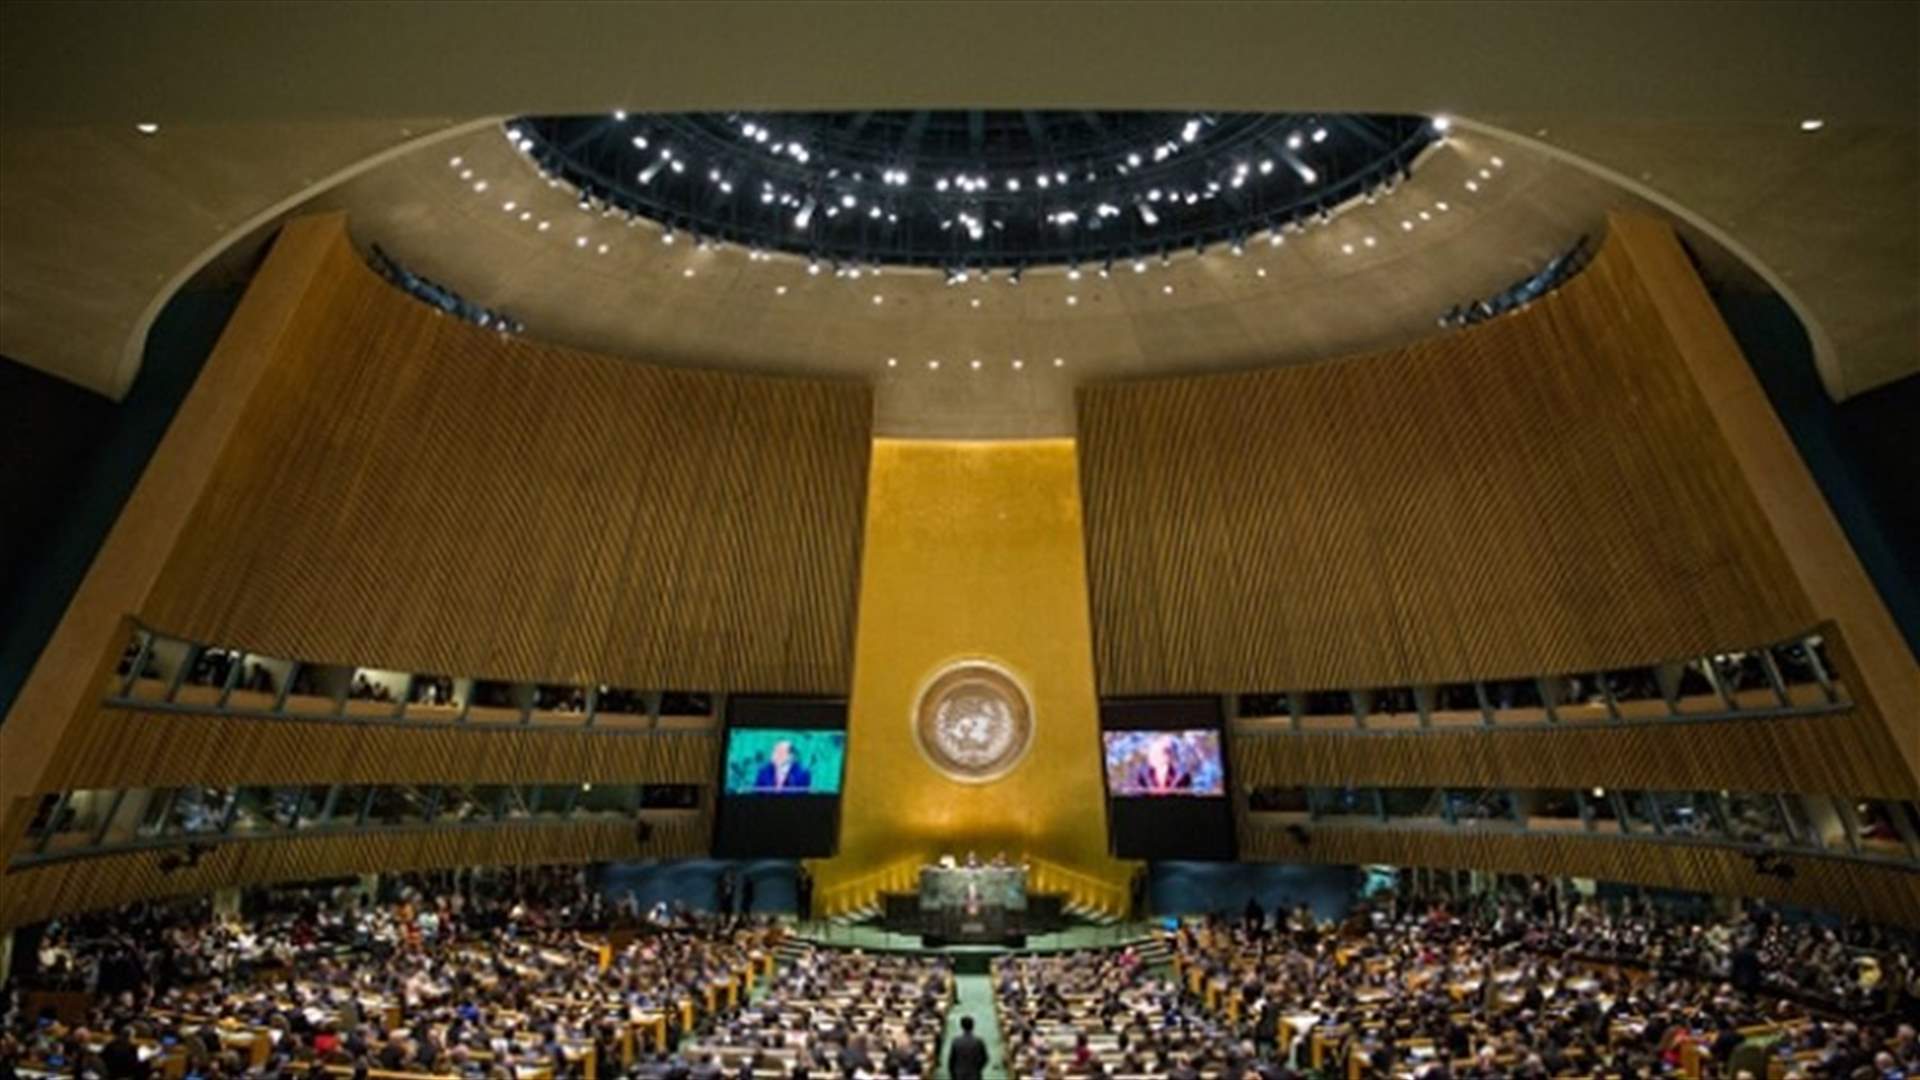 بالصور والفيديو – ابنة رئيس دولة تُحرج والدها خلال الجمعية العامة للأمم المتحدة